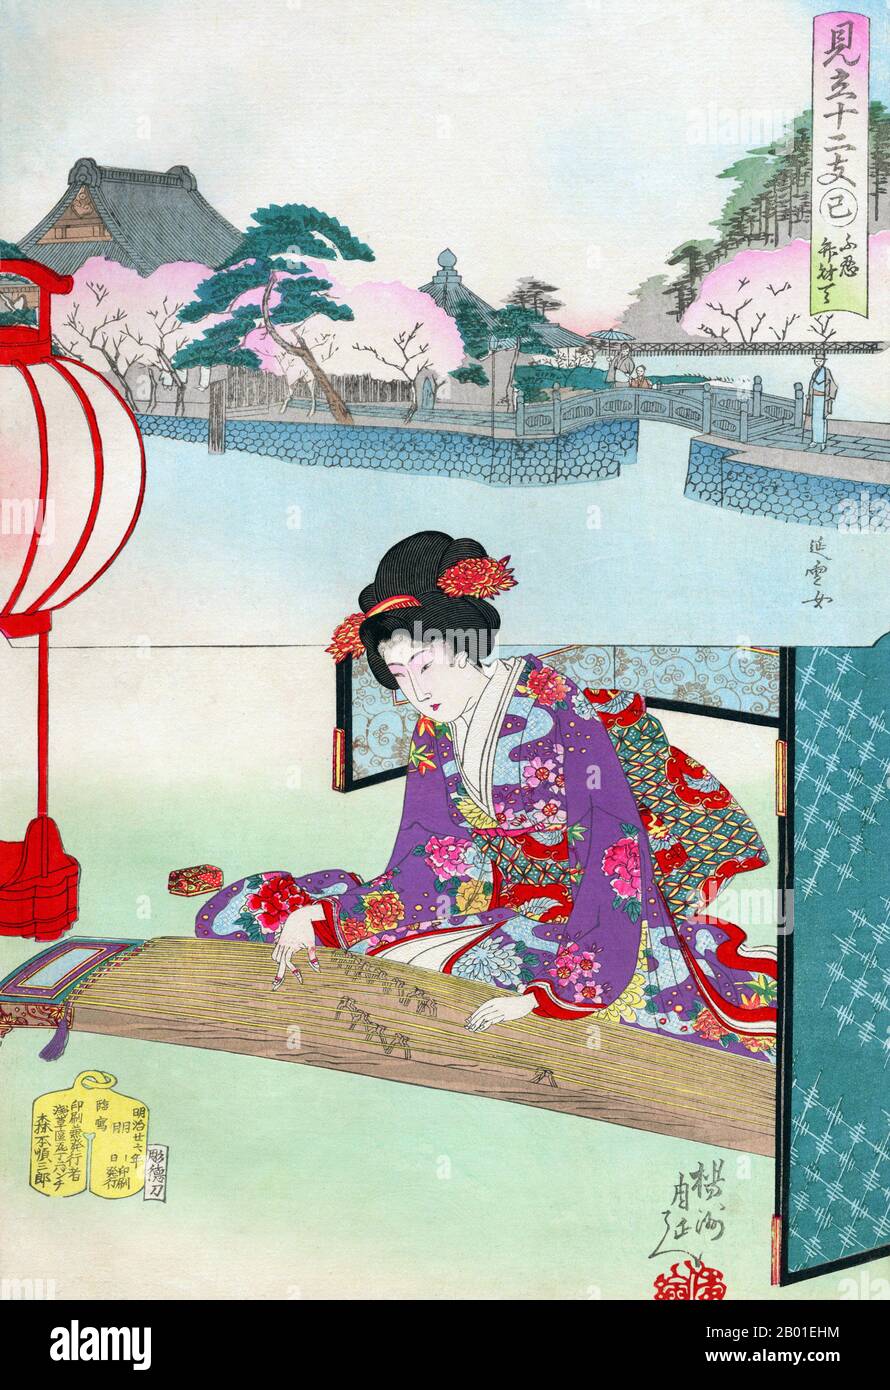 Japon: Une femme jouant le koto à l'étang Shinobazu, Ueno. Imprimé en blocs de bois Ukiyo-e de Yoshu Chikanobu (1838-1912), 1894. Une femme penche légèrement vers l'avant pour jouer un koto. Tandis qu'elle semble être à l'intérieur, soutenue par un écran rabattable et assise près d'une lanterne en papier qui brille doucement, l'encart montre des cerisiers en fleurs autour de l'étang Shinobazu à Ueno, avec son sanctuaire à la déité bouddhiste Benzaiten. Toyohara Chikanobu, mieux connu de ses contemporains comme Yōshū, était un artiste prolifique de la période Meiji au Japon. Ses œuvres capturent la transition de l'âge des samouraïs à la modernité Meiji. Banque D'Images